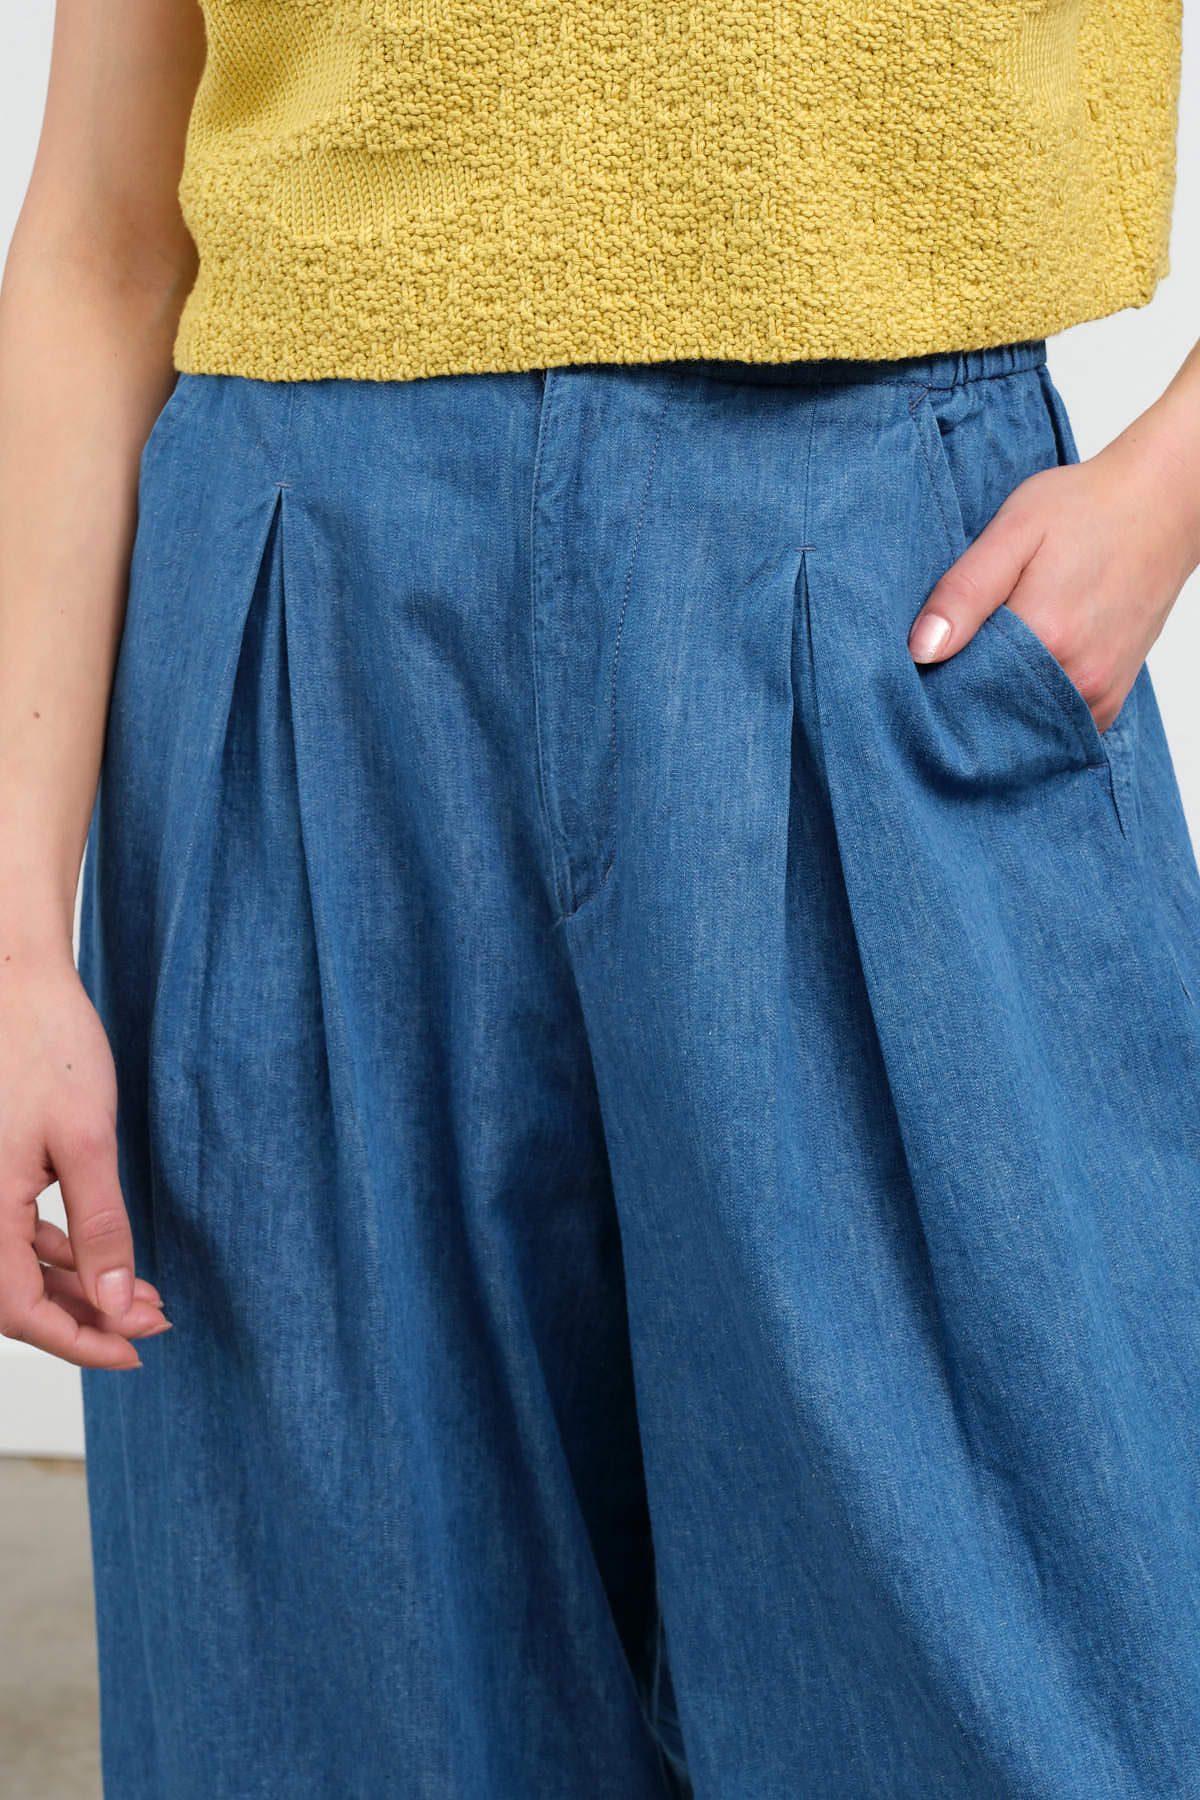 Crotch view of 7 oz Cotton Linen Denim Pants